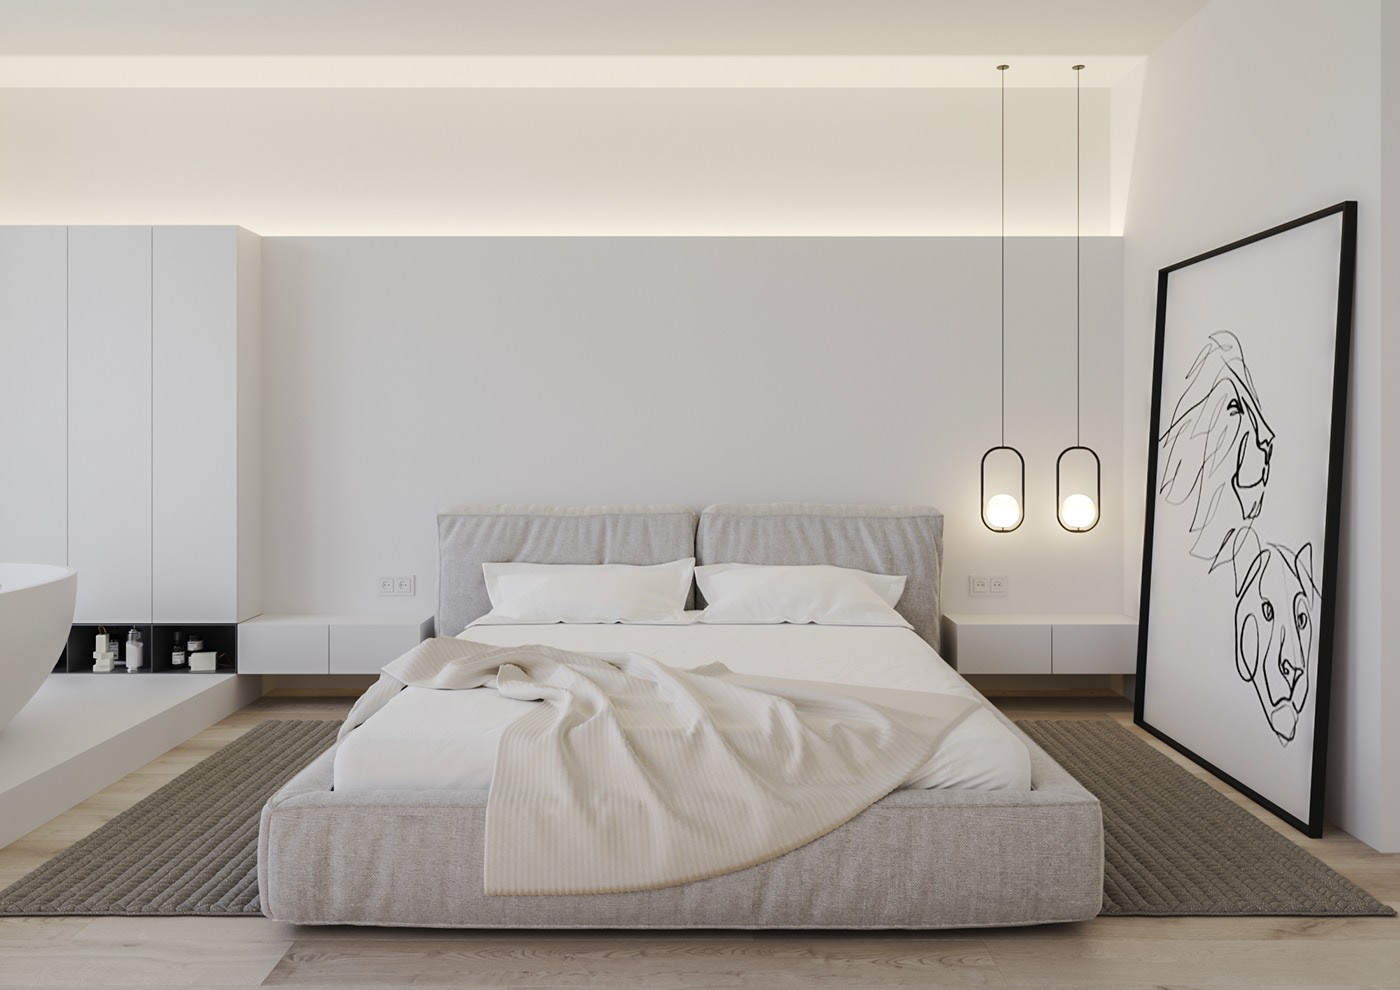 Hình ảnh phòng ngủ đơn giản với chăn đệm màu trắng, đèn thả đầu giường, tranh trang trí hình sư tử